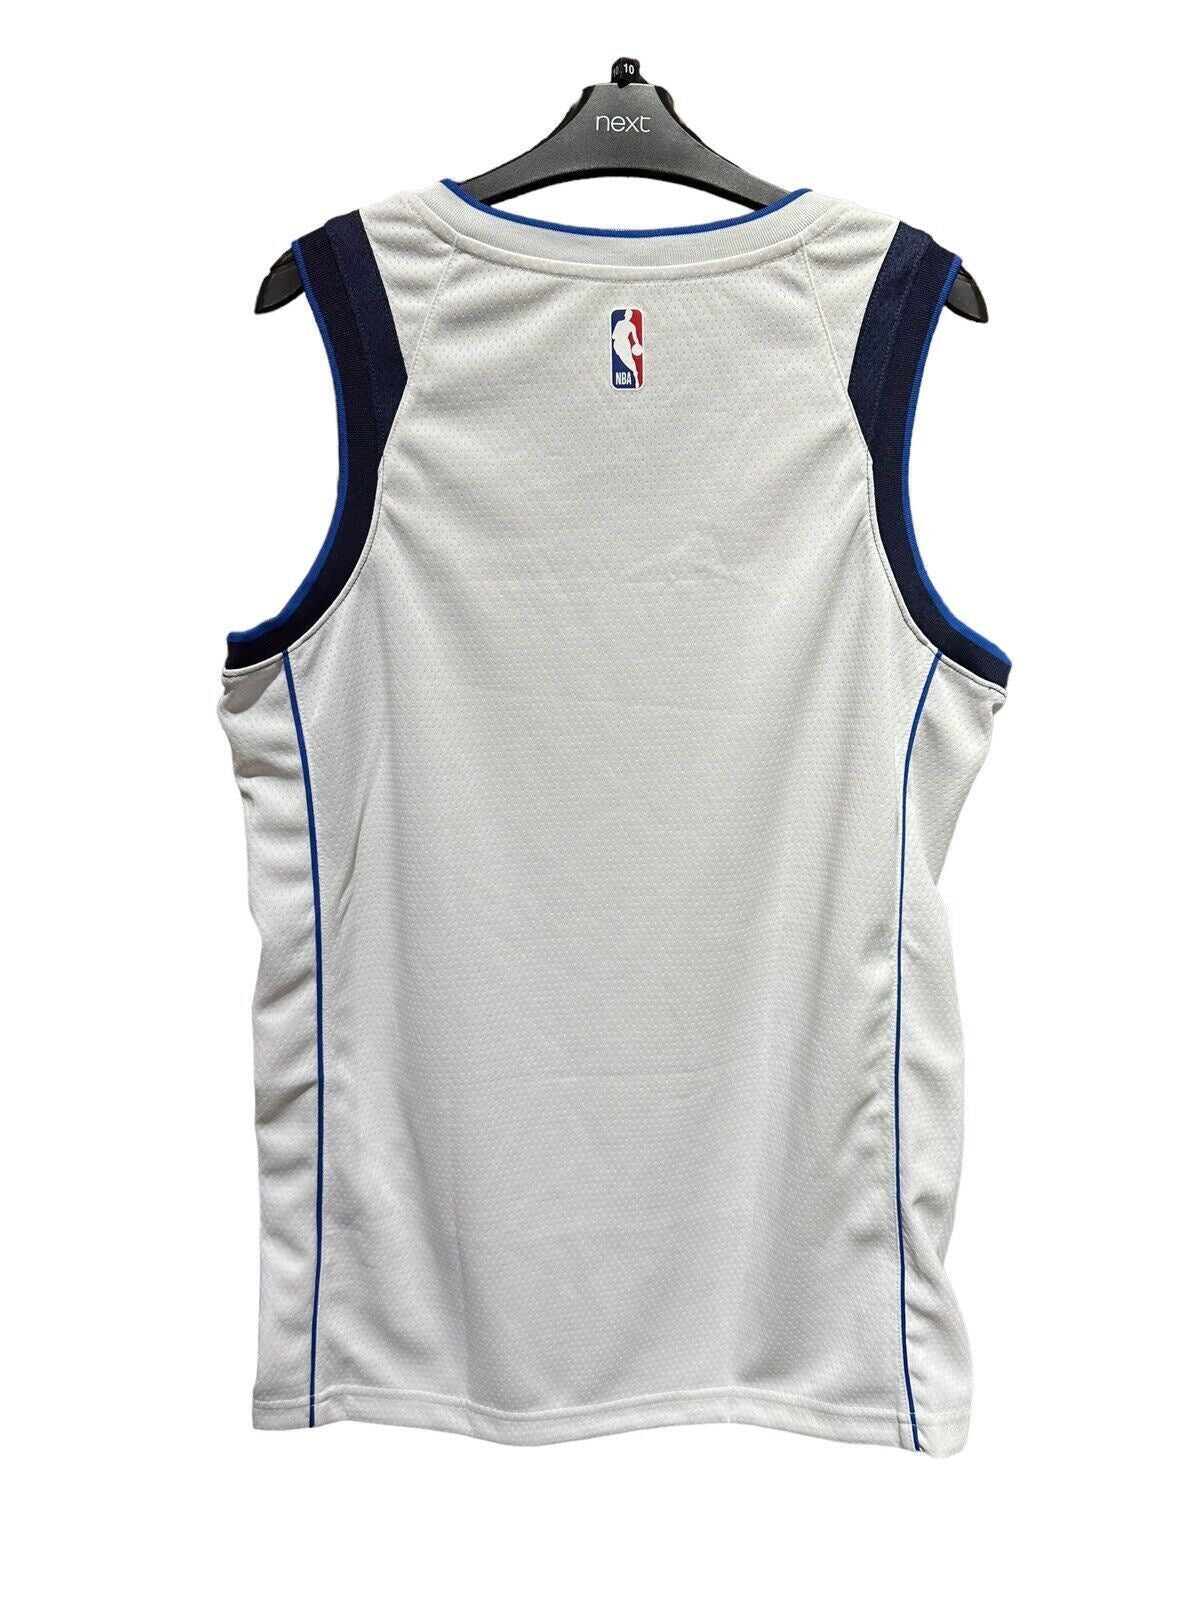 Nike NBA Dallas Mavericks Swingman Edition Jersey ‘77’ Mens Medium